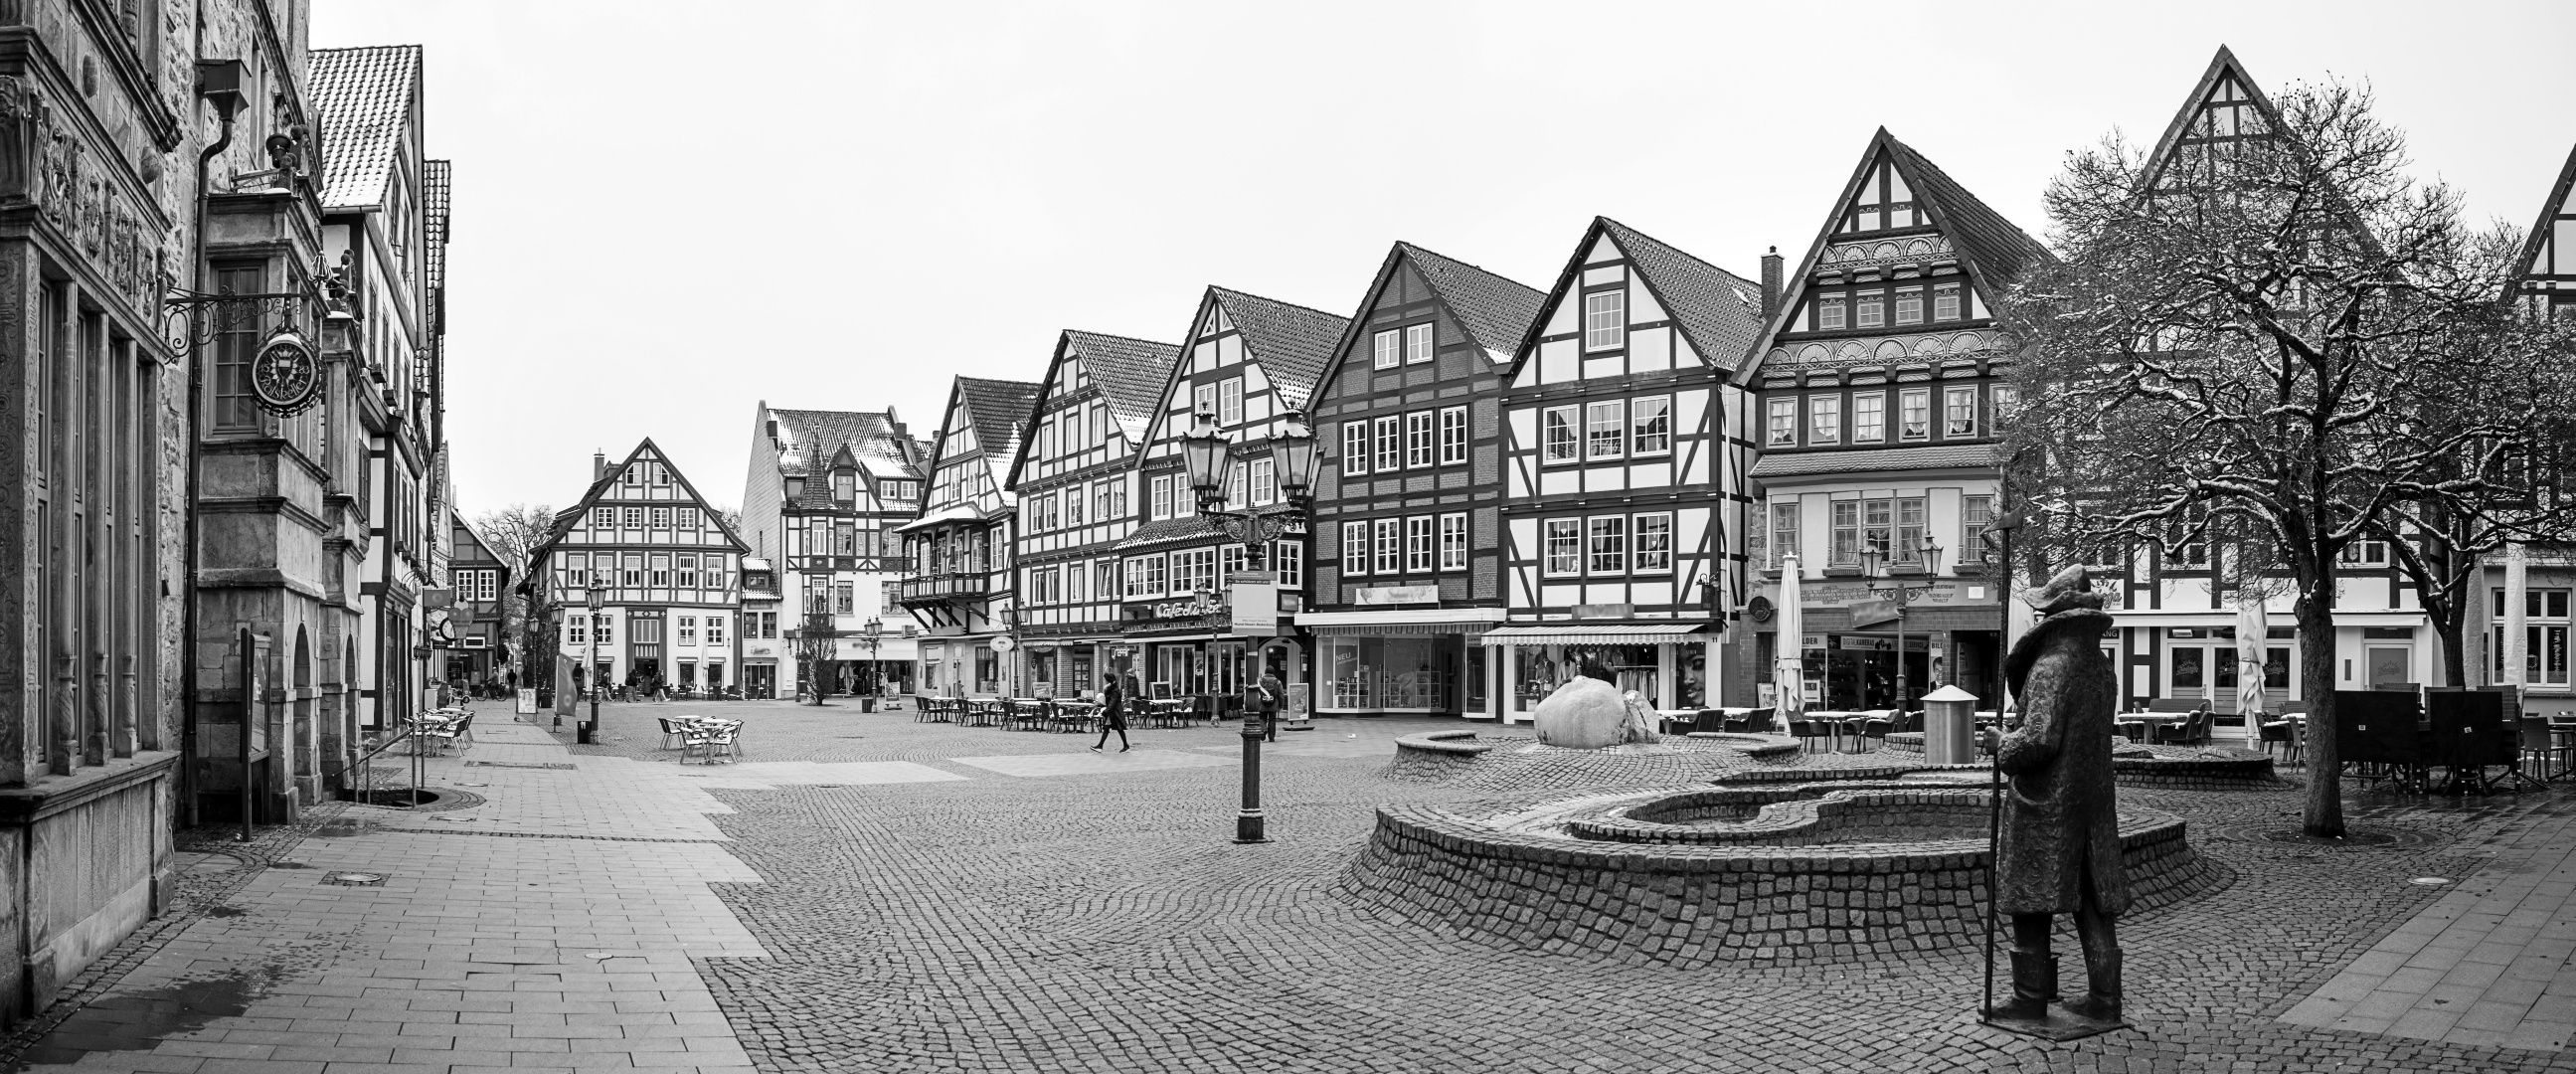 Marktplatz Rinteln